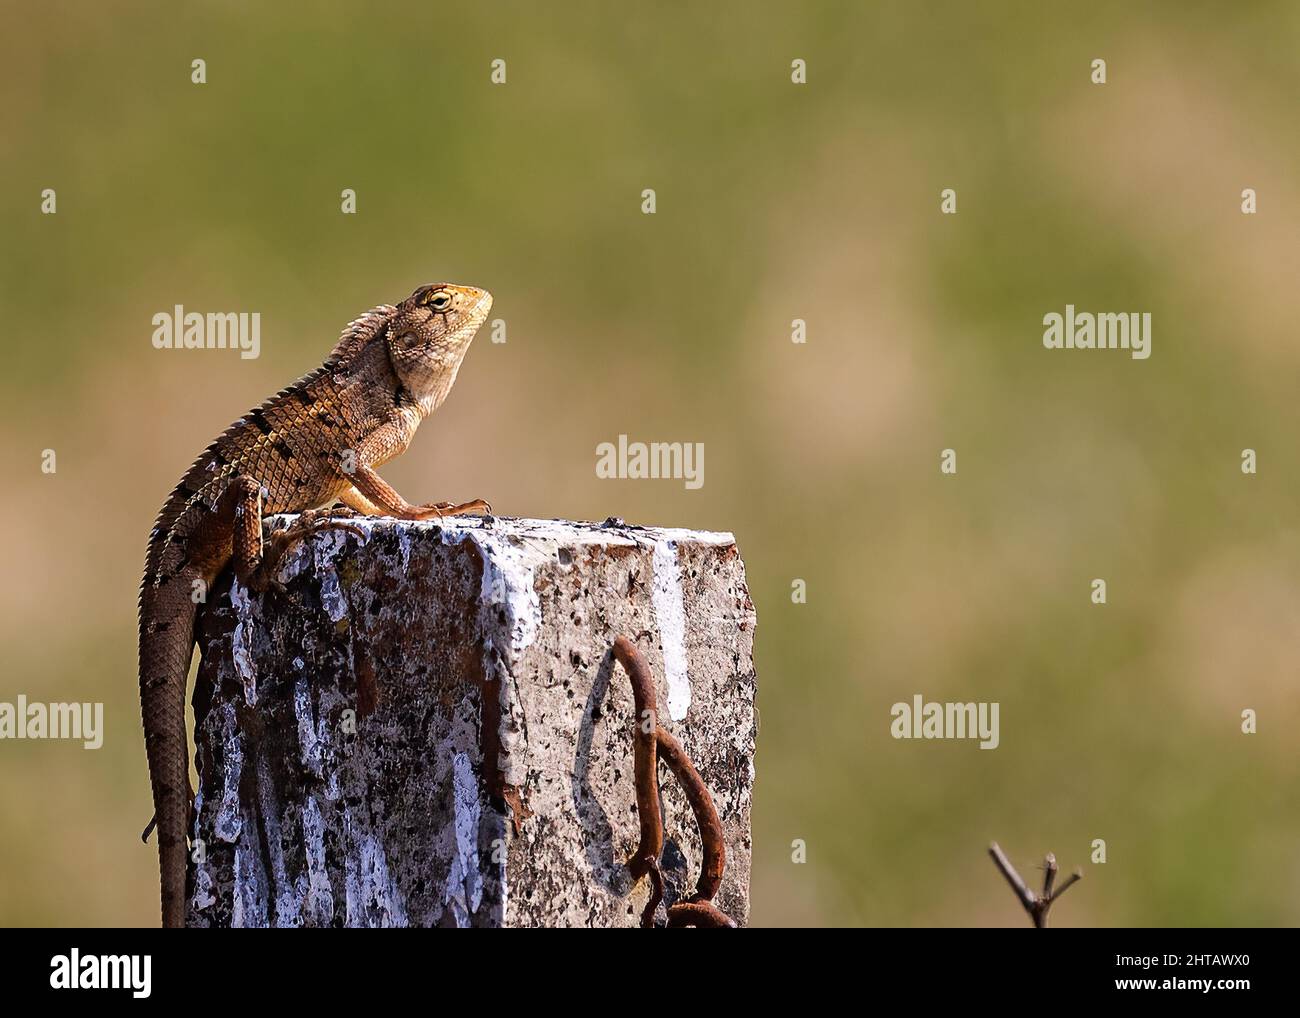 Oriental garden lizard, Asian lizard sitting on a pillar against a blurred green background Stock Photo